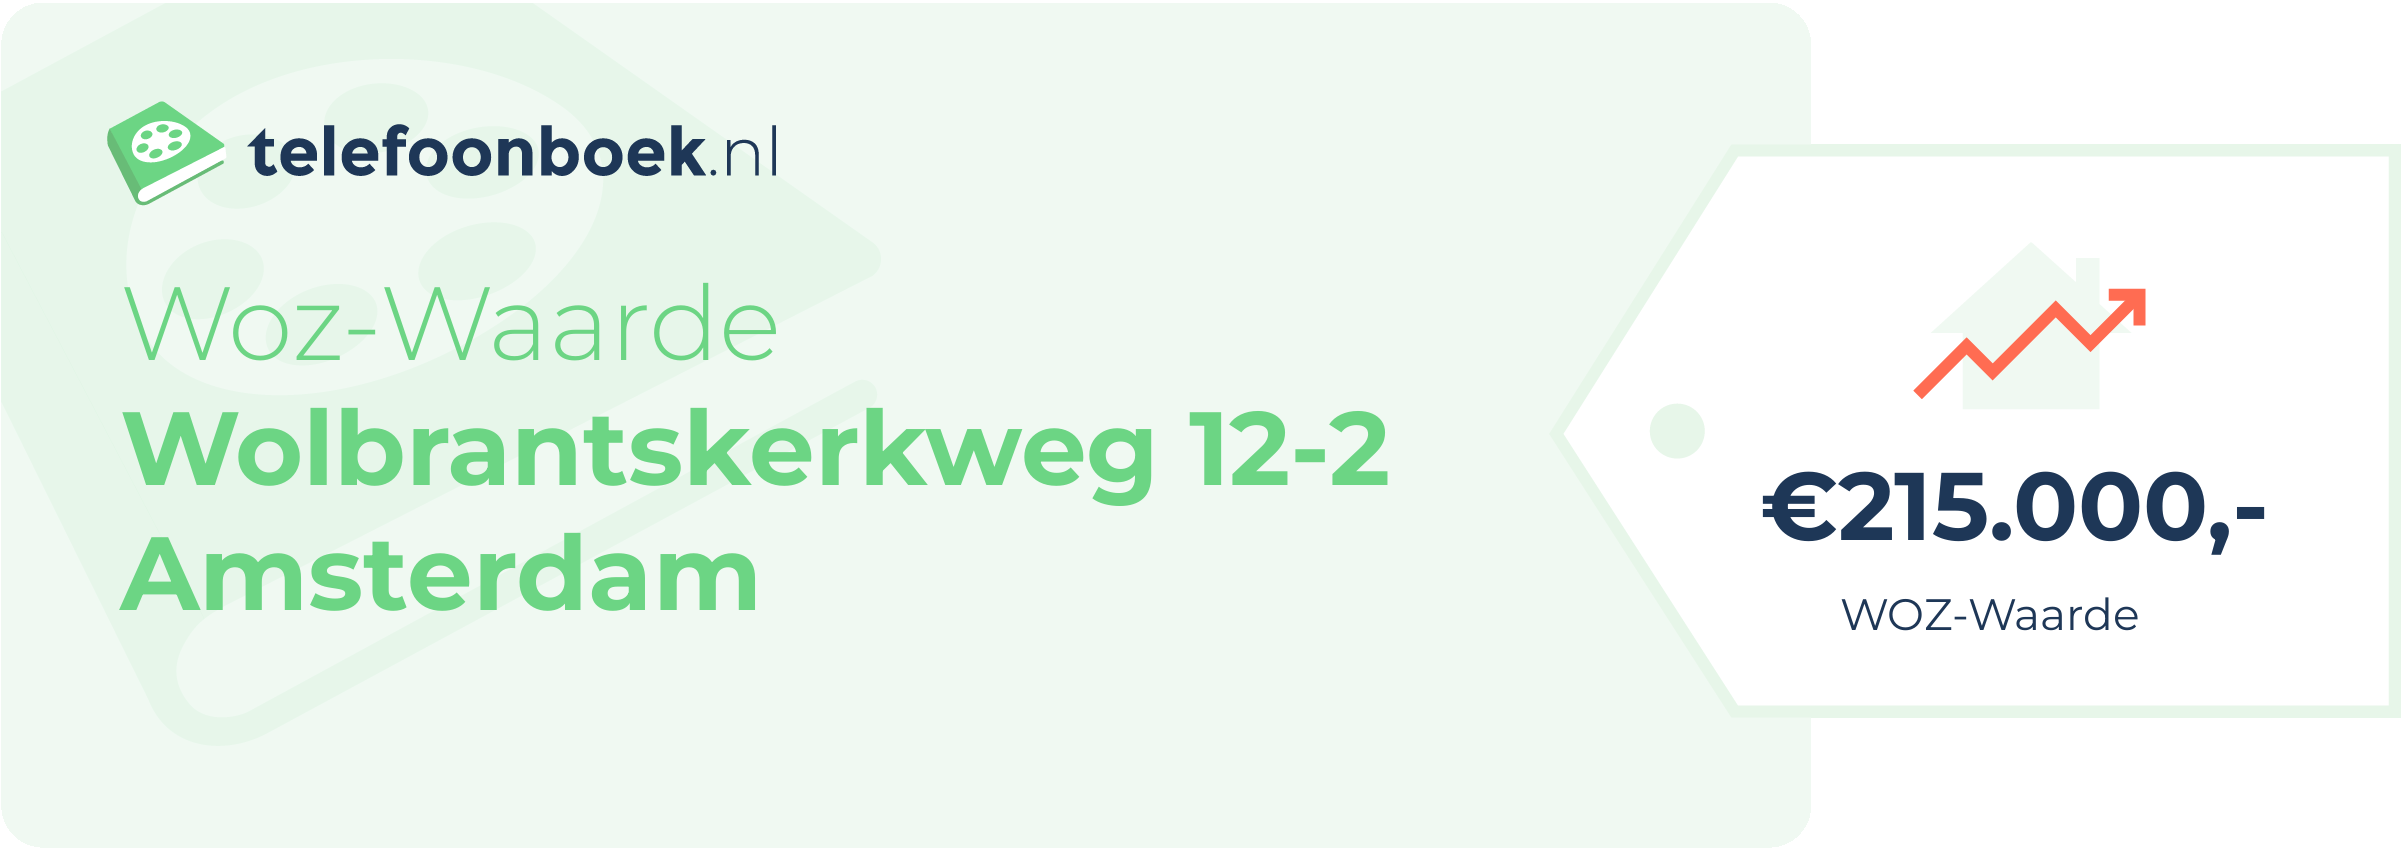 WOZ-waarde Wolbrantskerkweg 12-2 Amsterdam